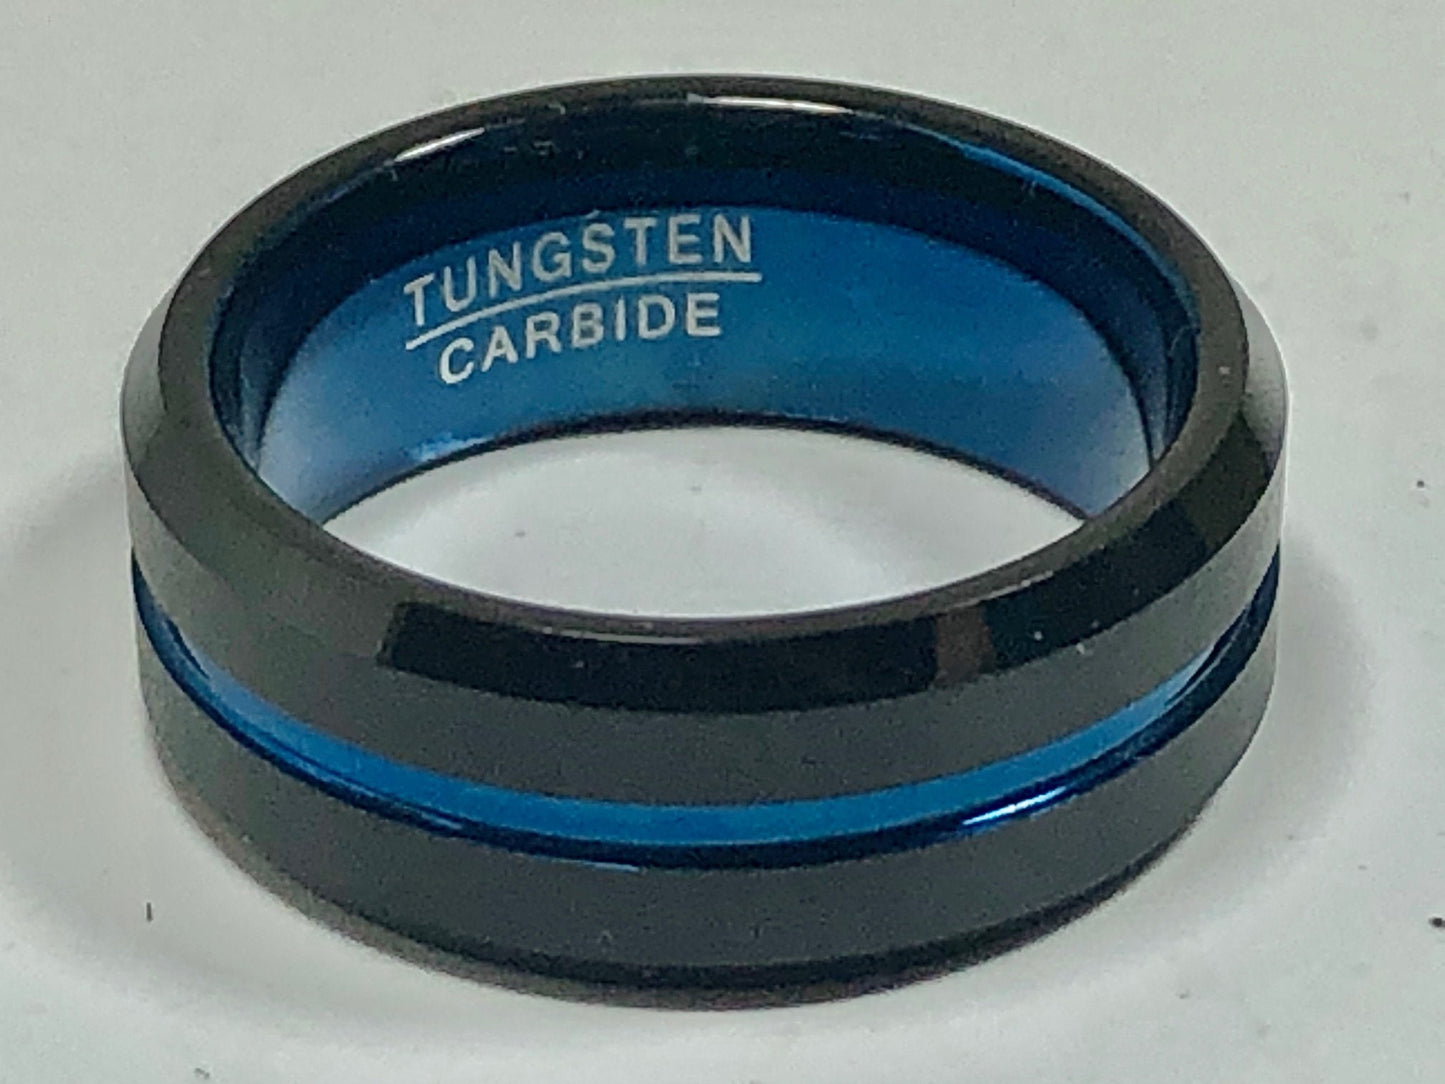 Tungsten Carbide Vintage Wedding Band Ring Black/Blue For Men - Anniversary & Wedding - Friendship - Anytime, Best Friend